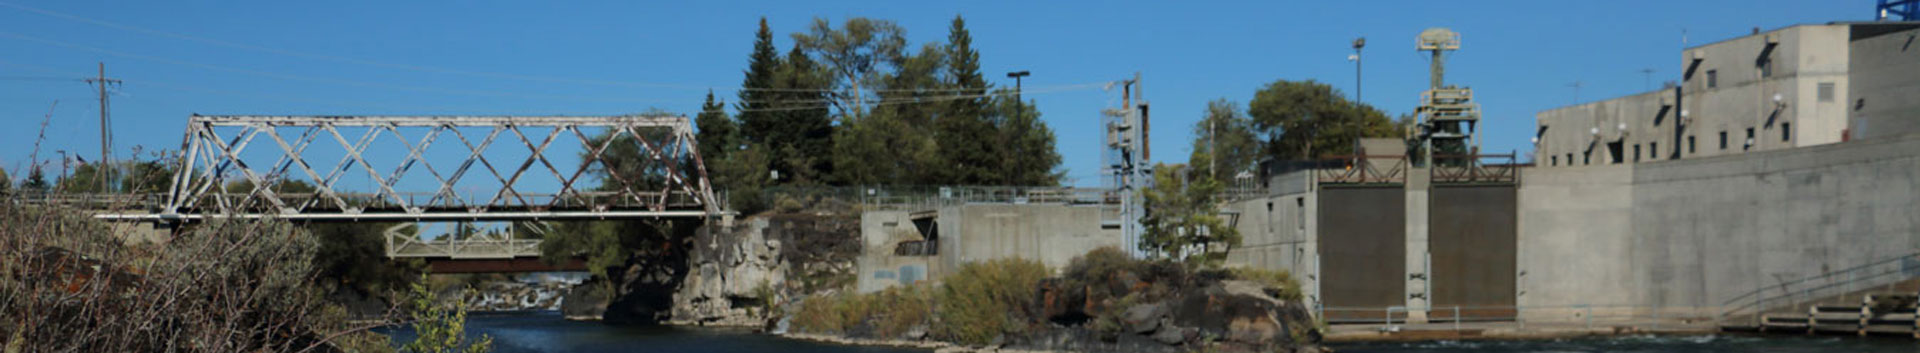 photo of power plant and bridge